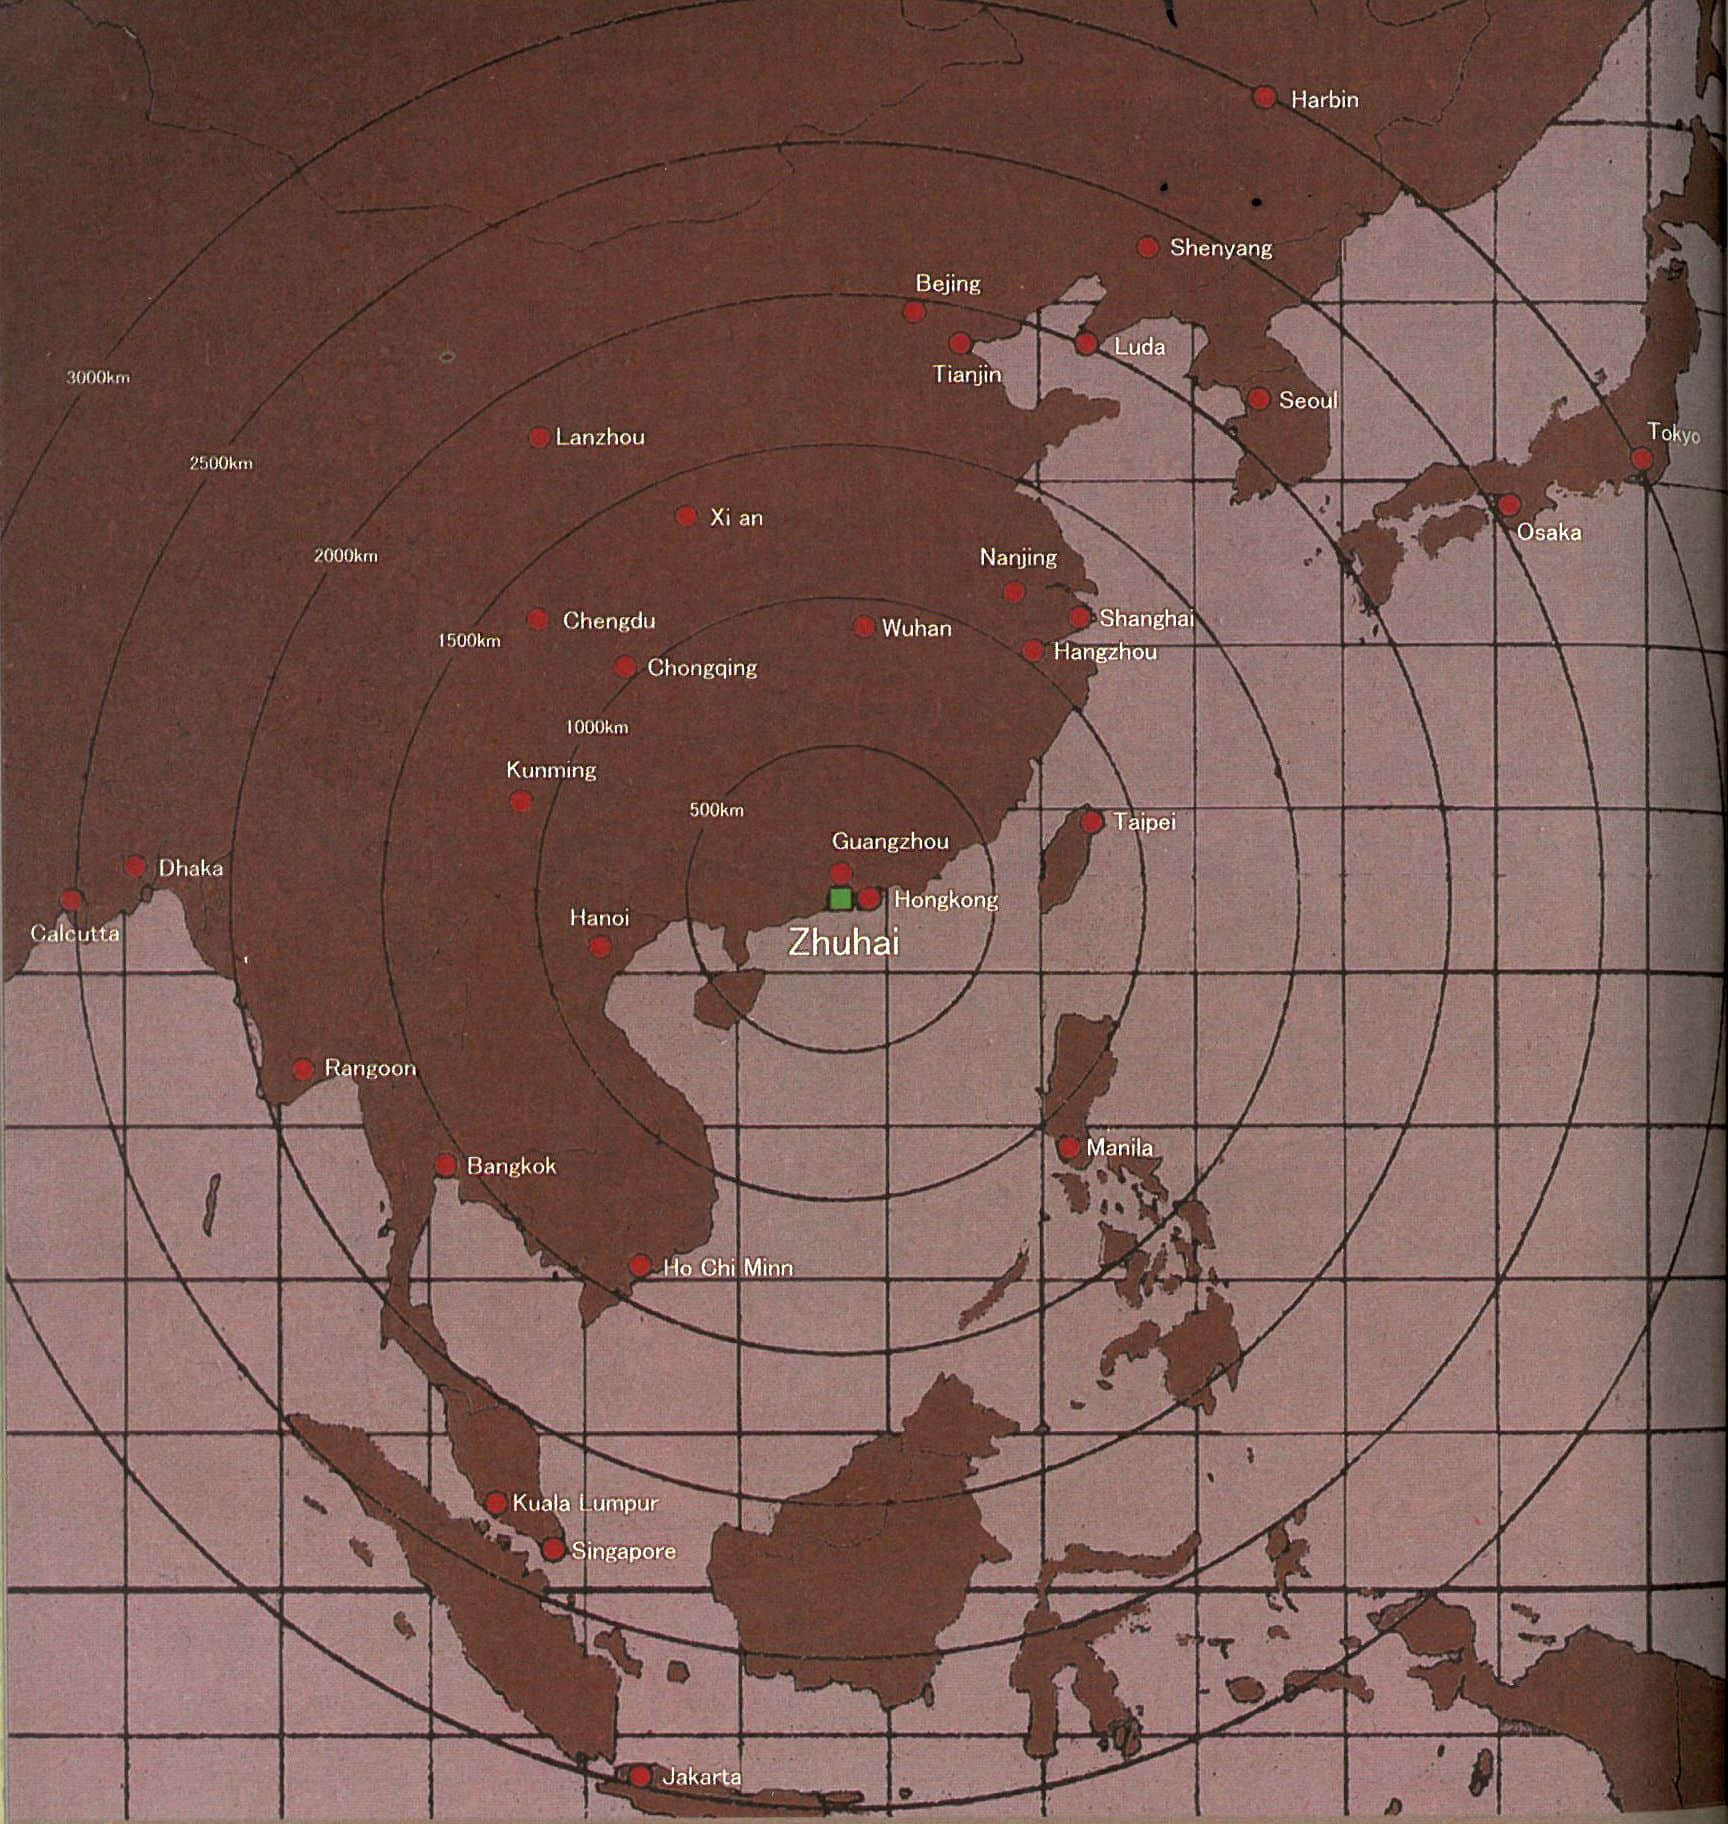 矶崎新用这张图示意“海市”在亚洲的中心位置